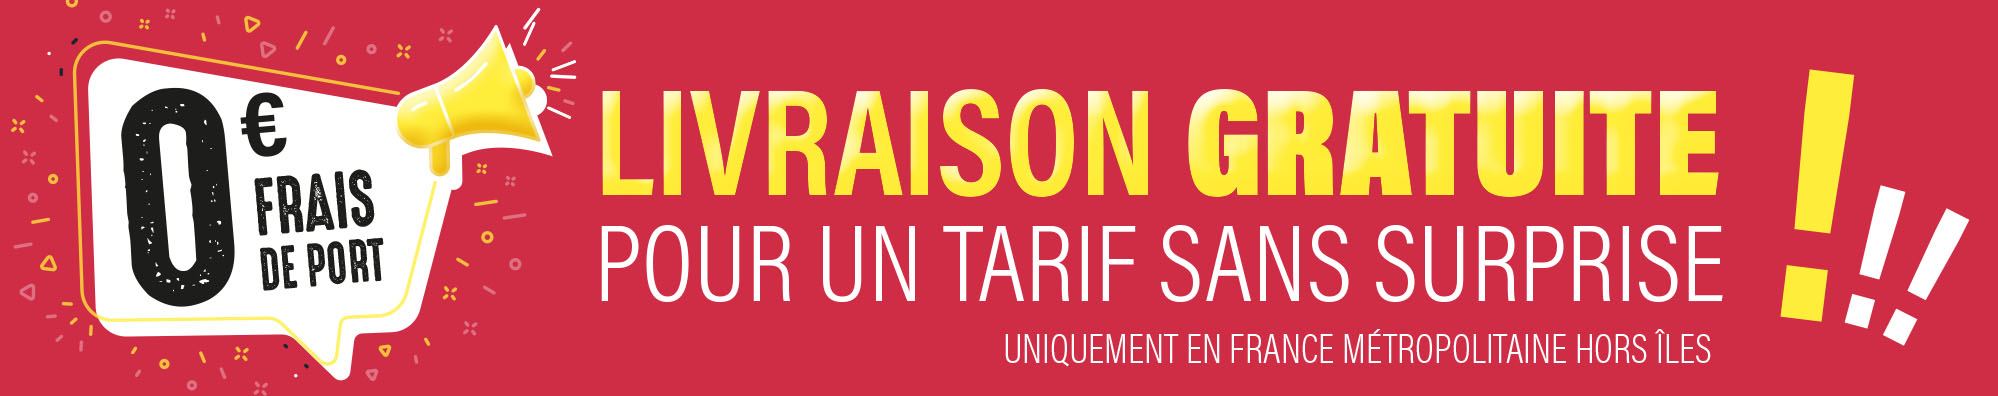 Un fond rouge avec du texte : LIVRAISON GRATUITE pour un tarif sans surprise !!! Uniquement en France métropolitaine hors îles. Dans une bulle blanche c'est écrit 0€ frais de port avec un megaphone.